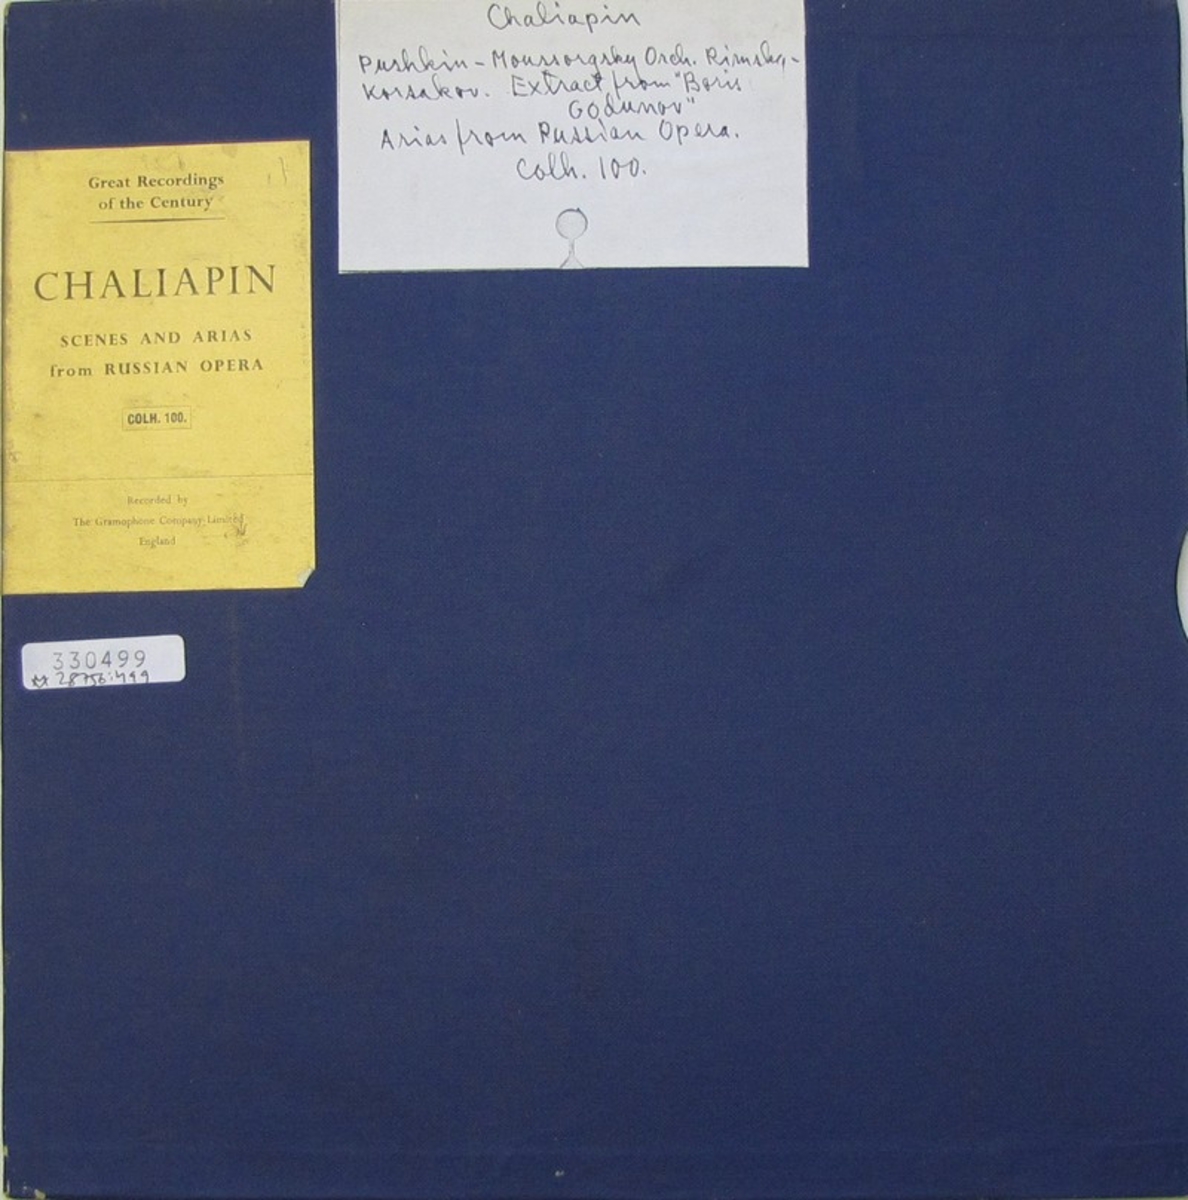 LP-skiva av märket H.M.V.